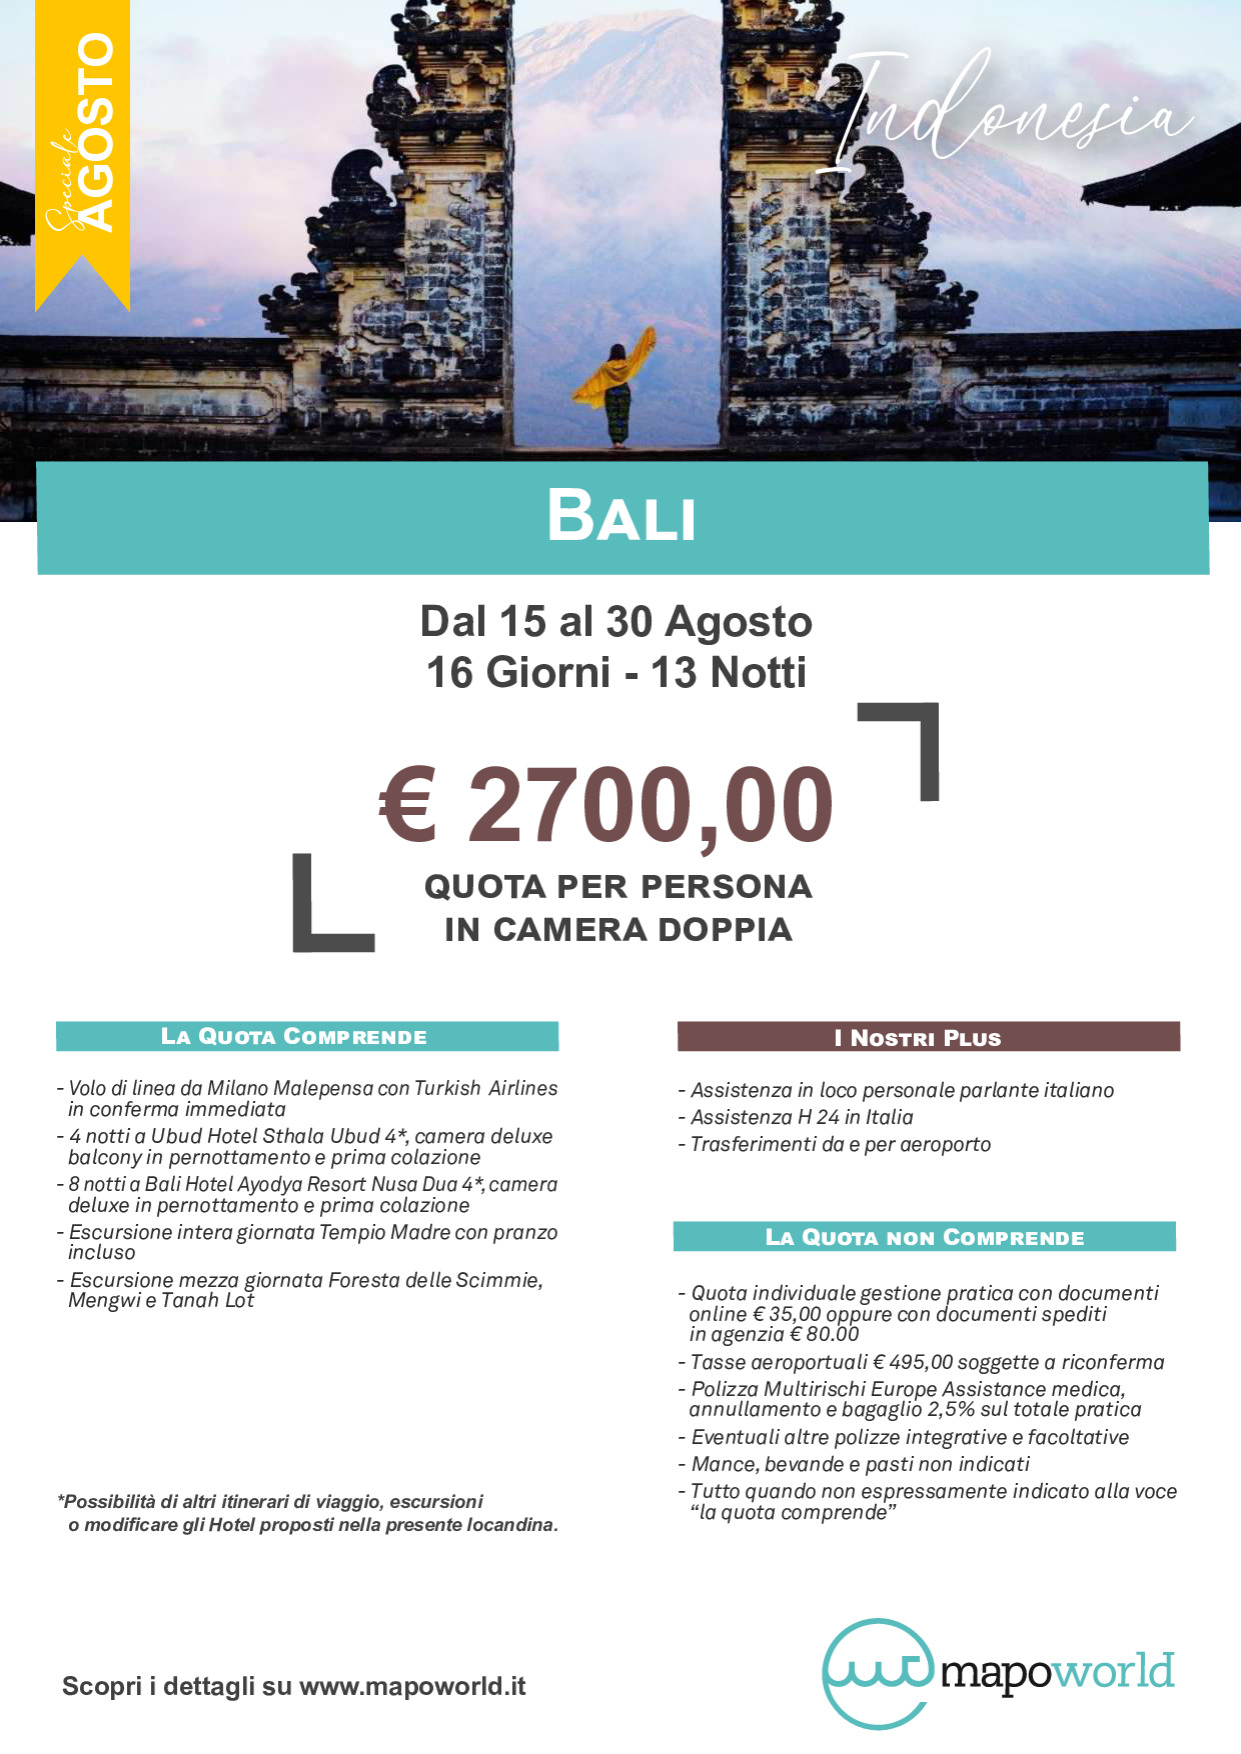 Bali - dal 15 al 30 Agosto